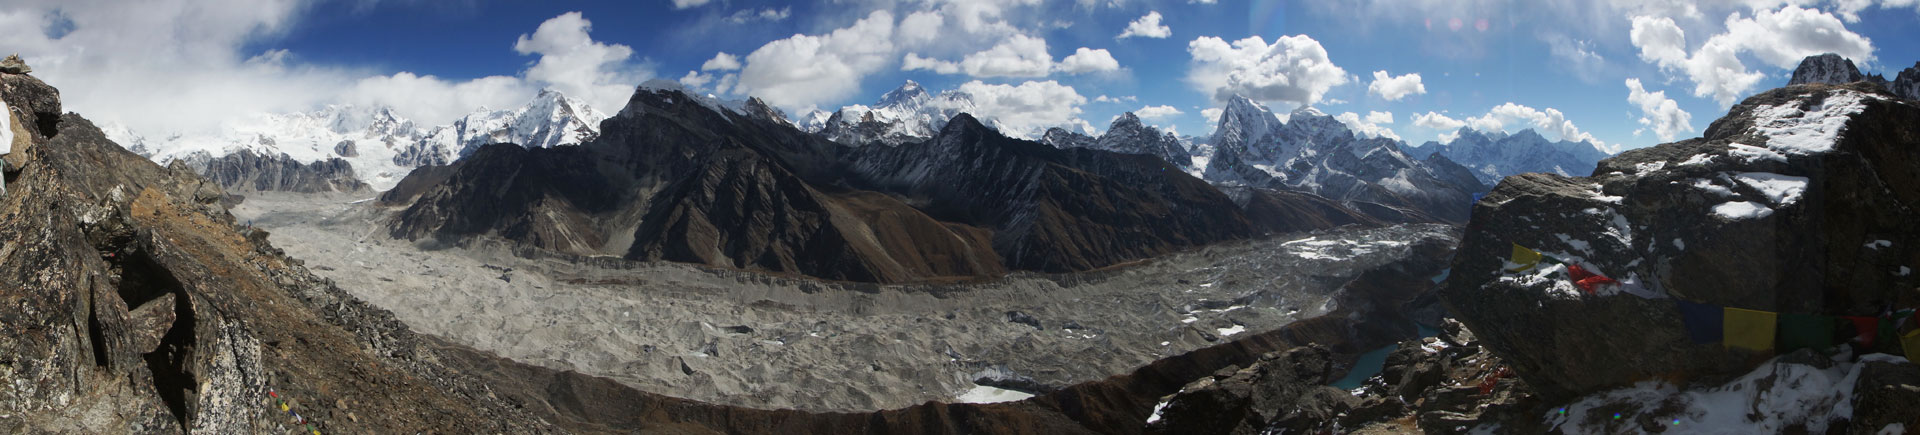 Nepal 2017 Great Himalaya Epic Trail